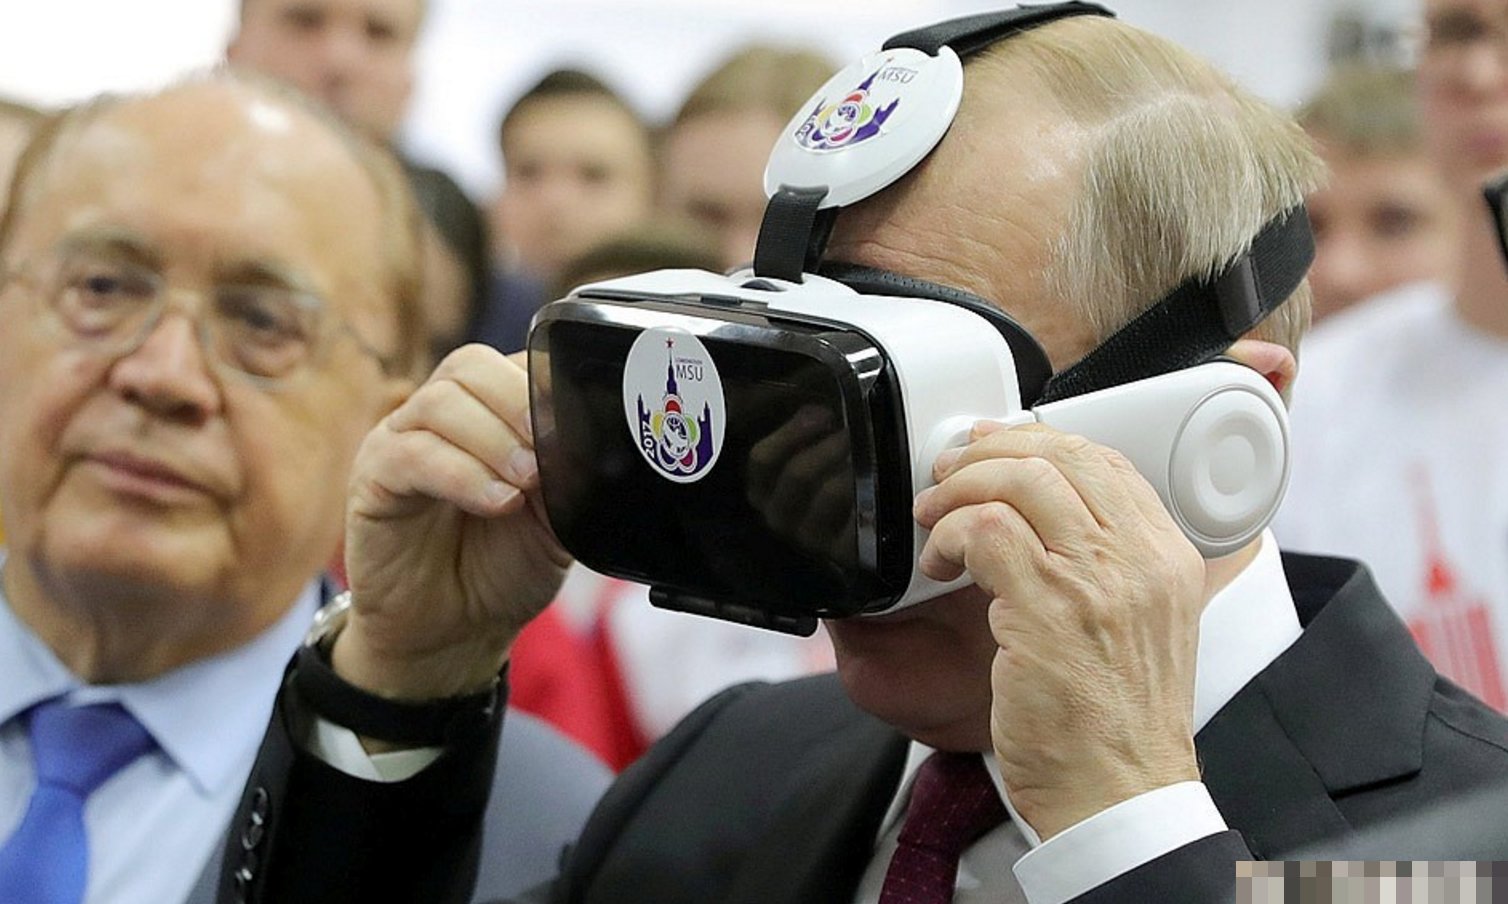 VR虚拟现实技术的支持